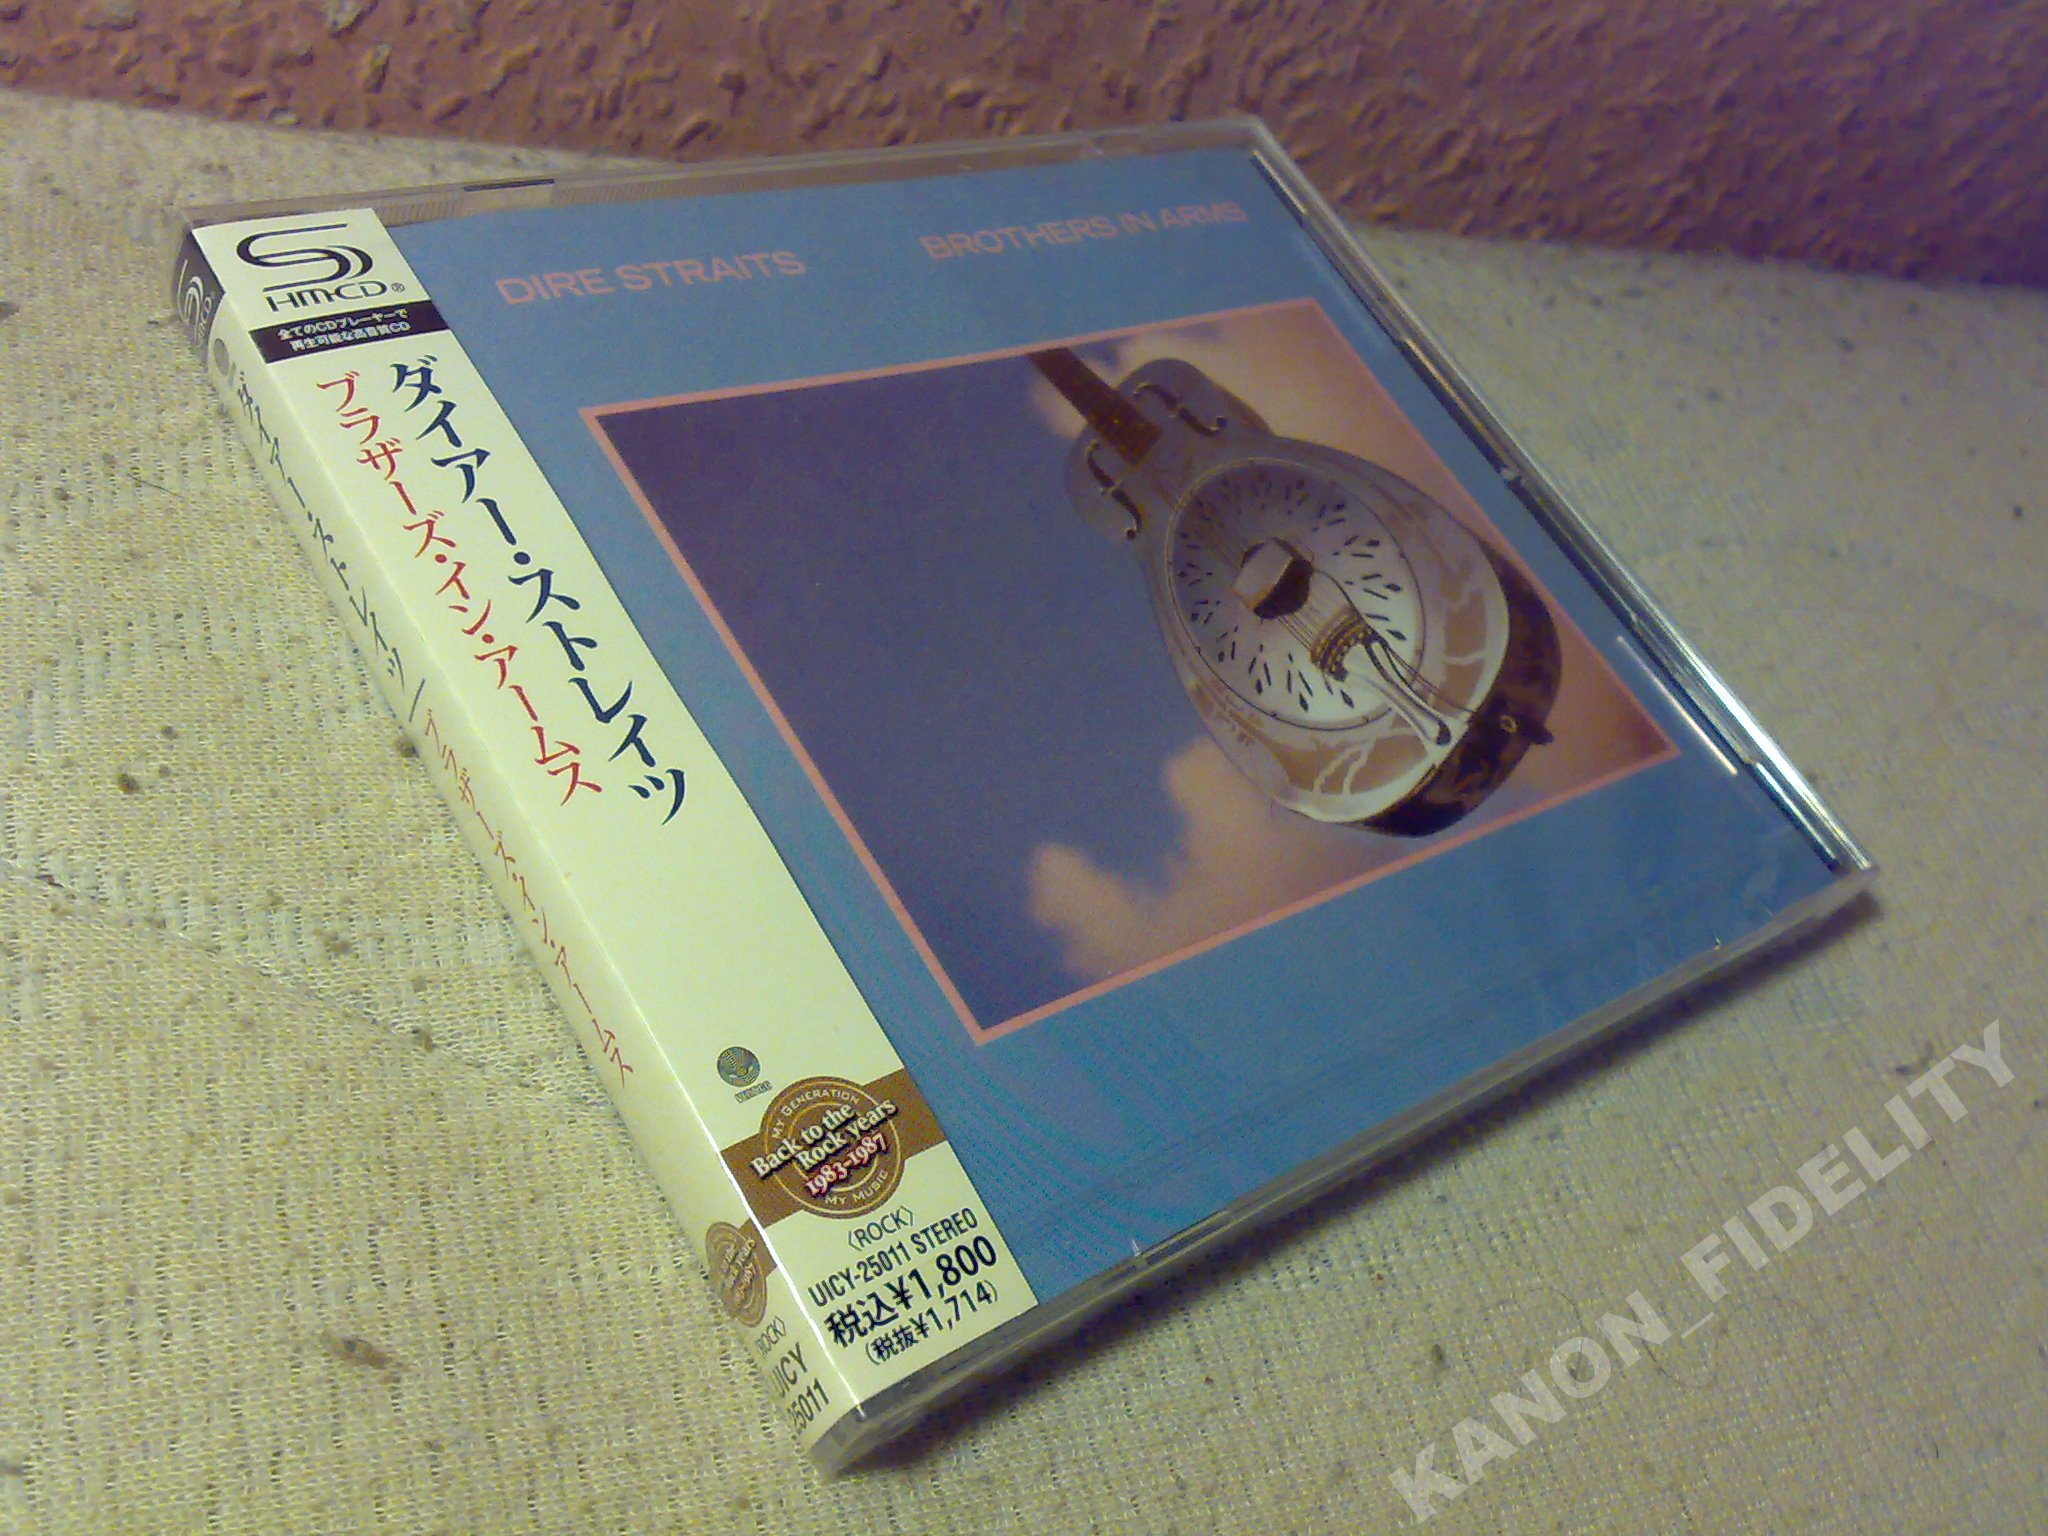 DIRE STRAITS Brothers in Arms SHM-CD JAPAN NEW Mark Knopfler Sting od ręki!  9368215328 - Sklepy, Opinie, Ceny w